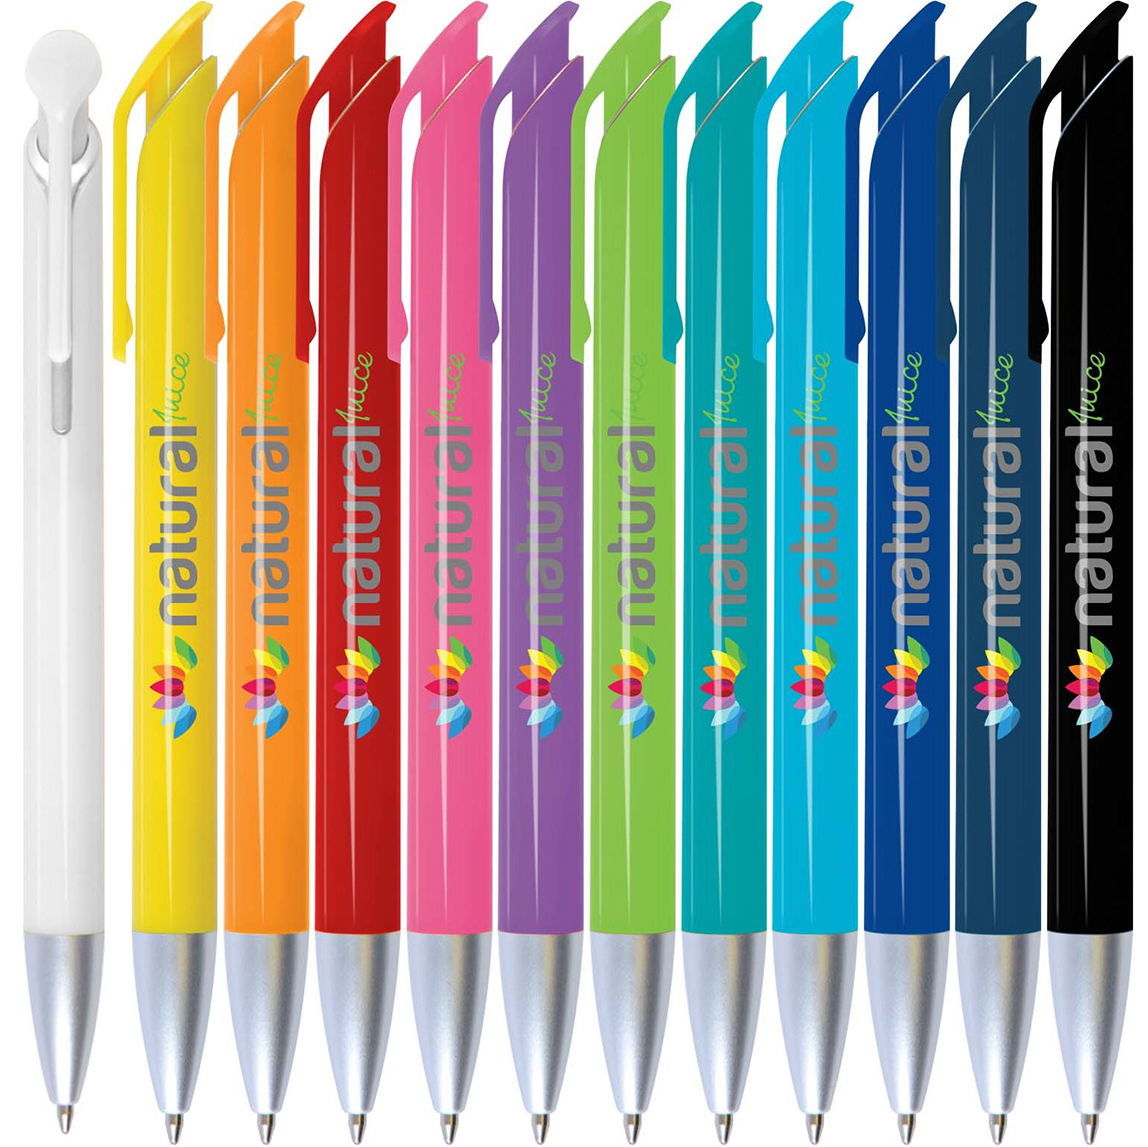 Octave Pen Features